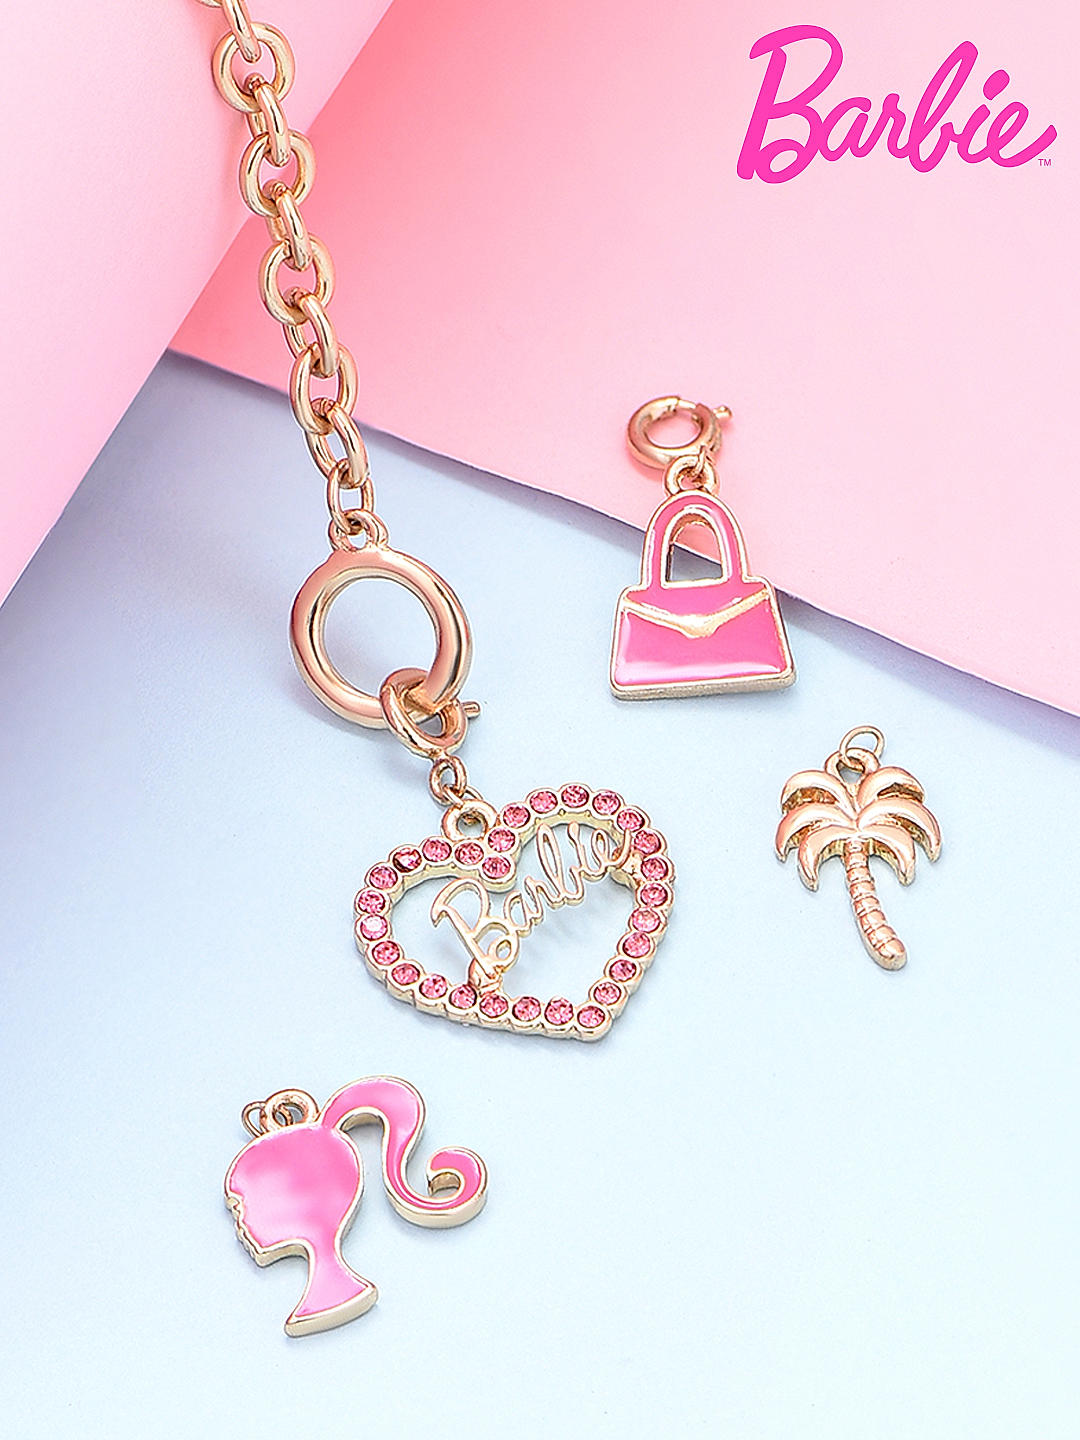 The Little Mermaid Charm Bracelet | Disney Store